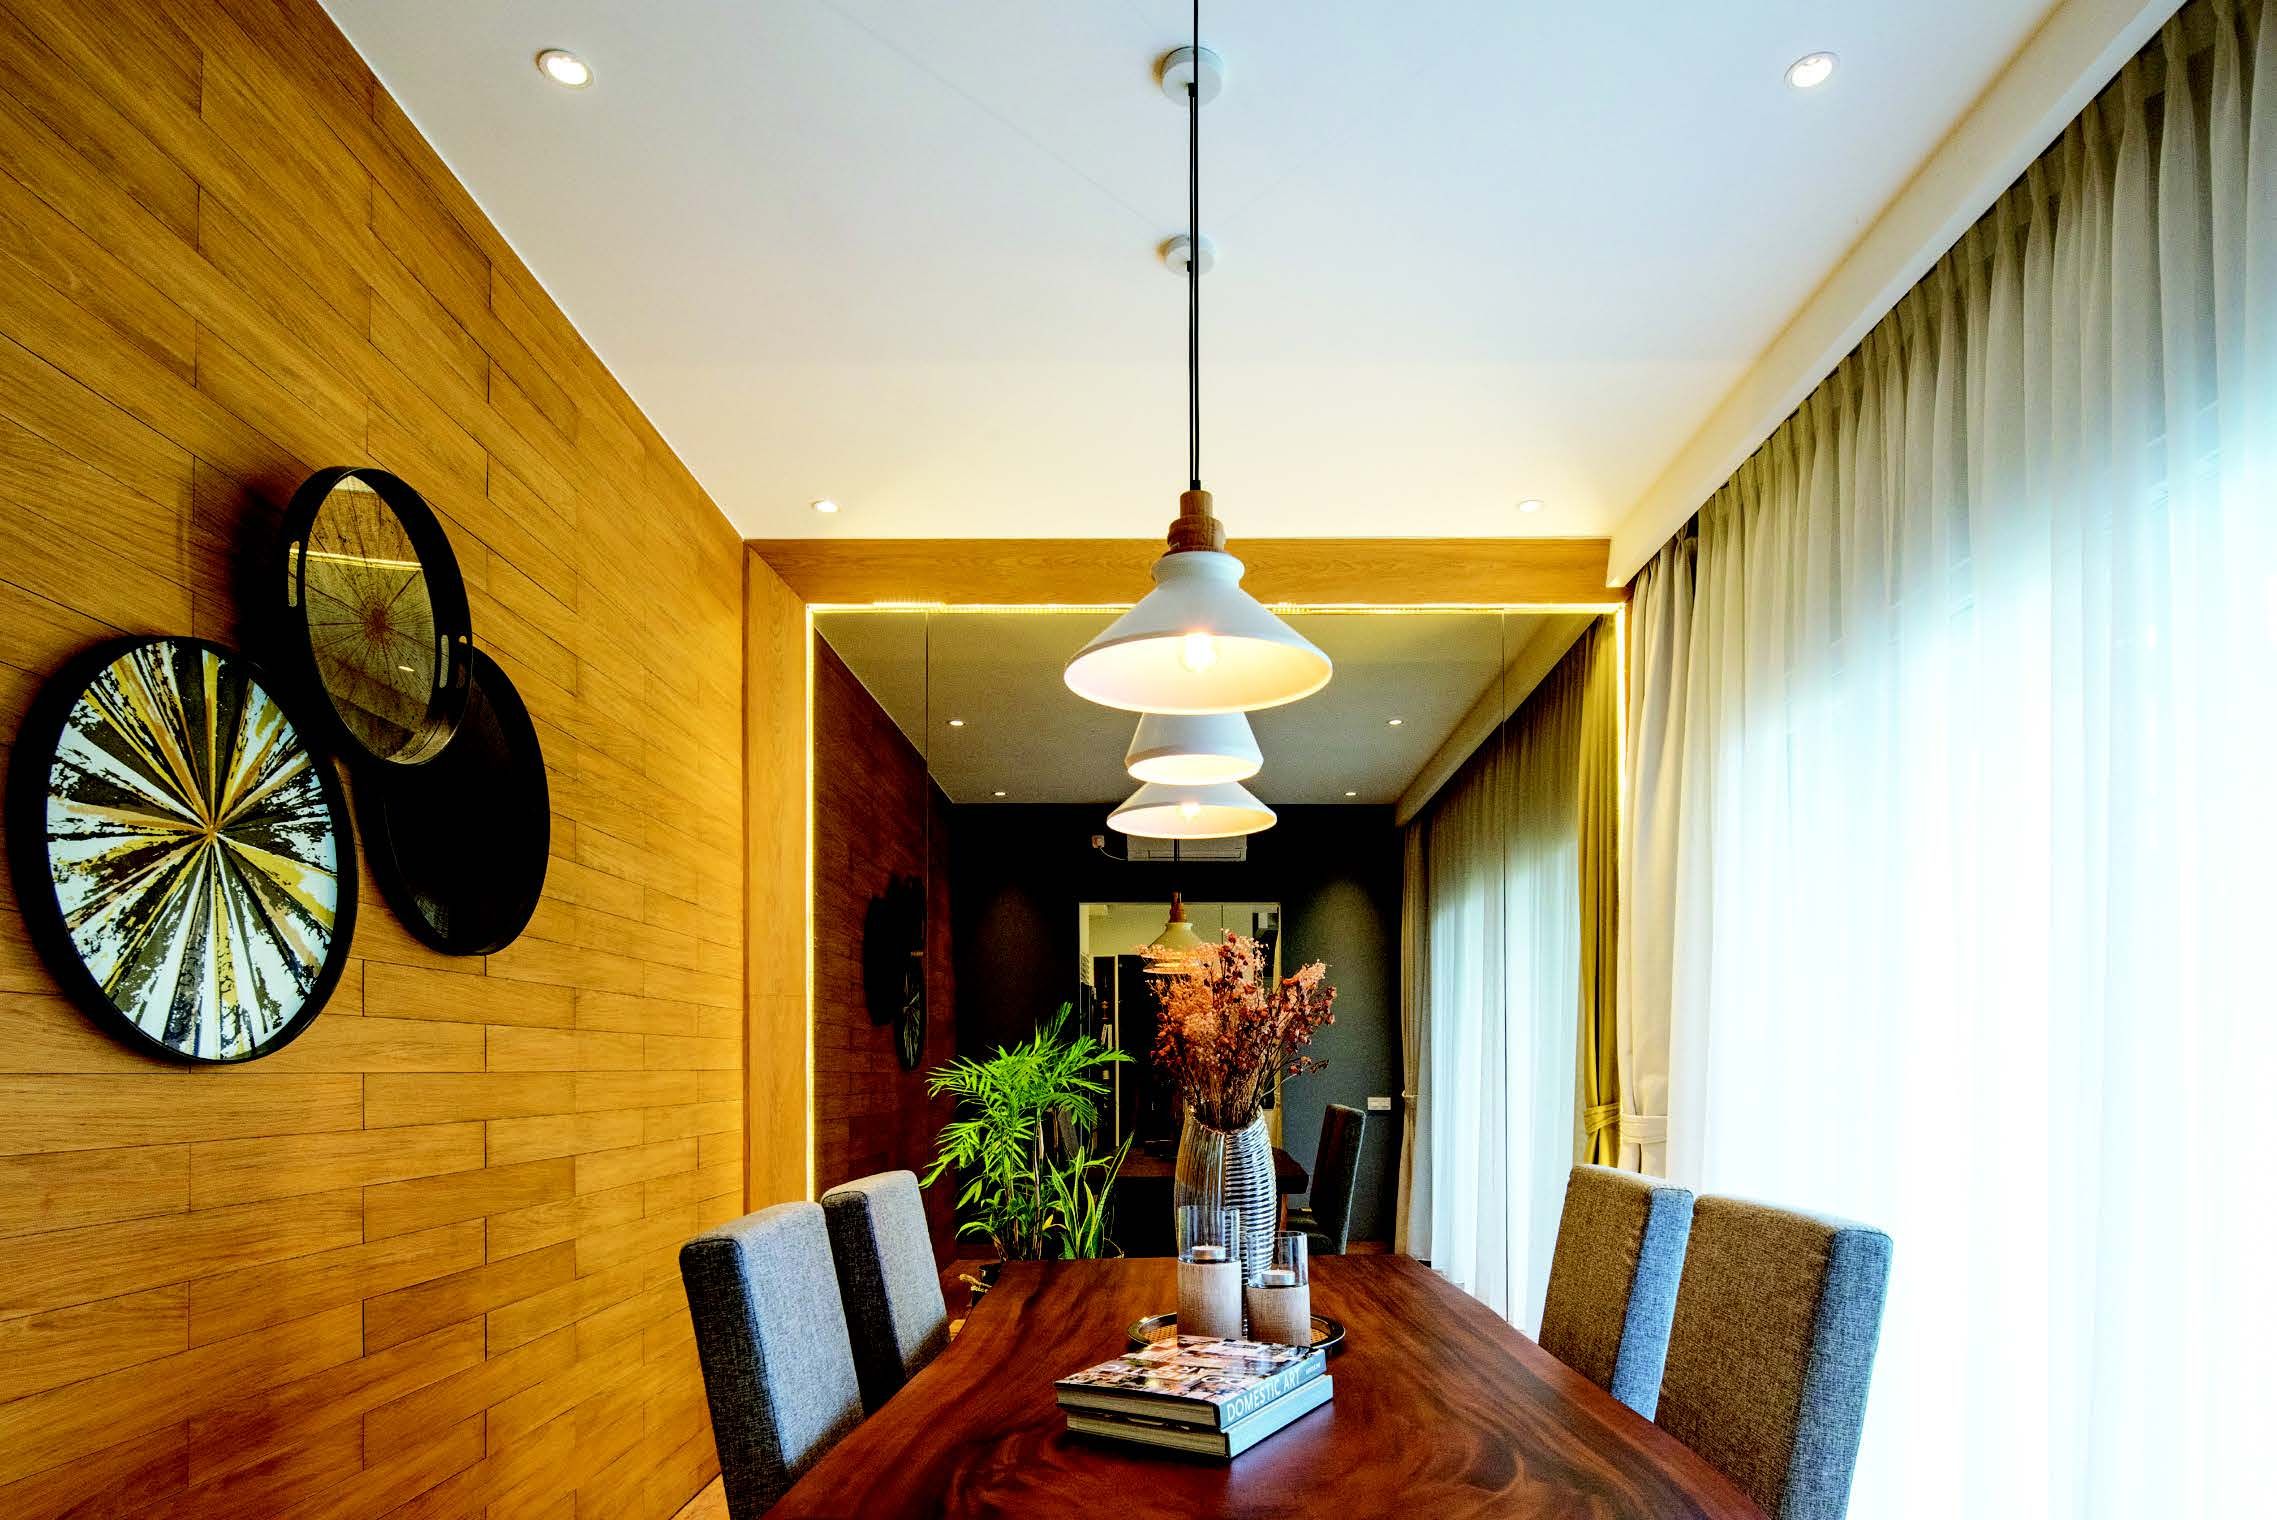 Indahnya ruang makan yang mengaplikasikan dinding panel dari kayu. Ruang ini juga memiliki jendela yang memungkinkan masuknya sinar alami sepanjang hari.